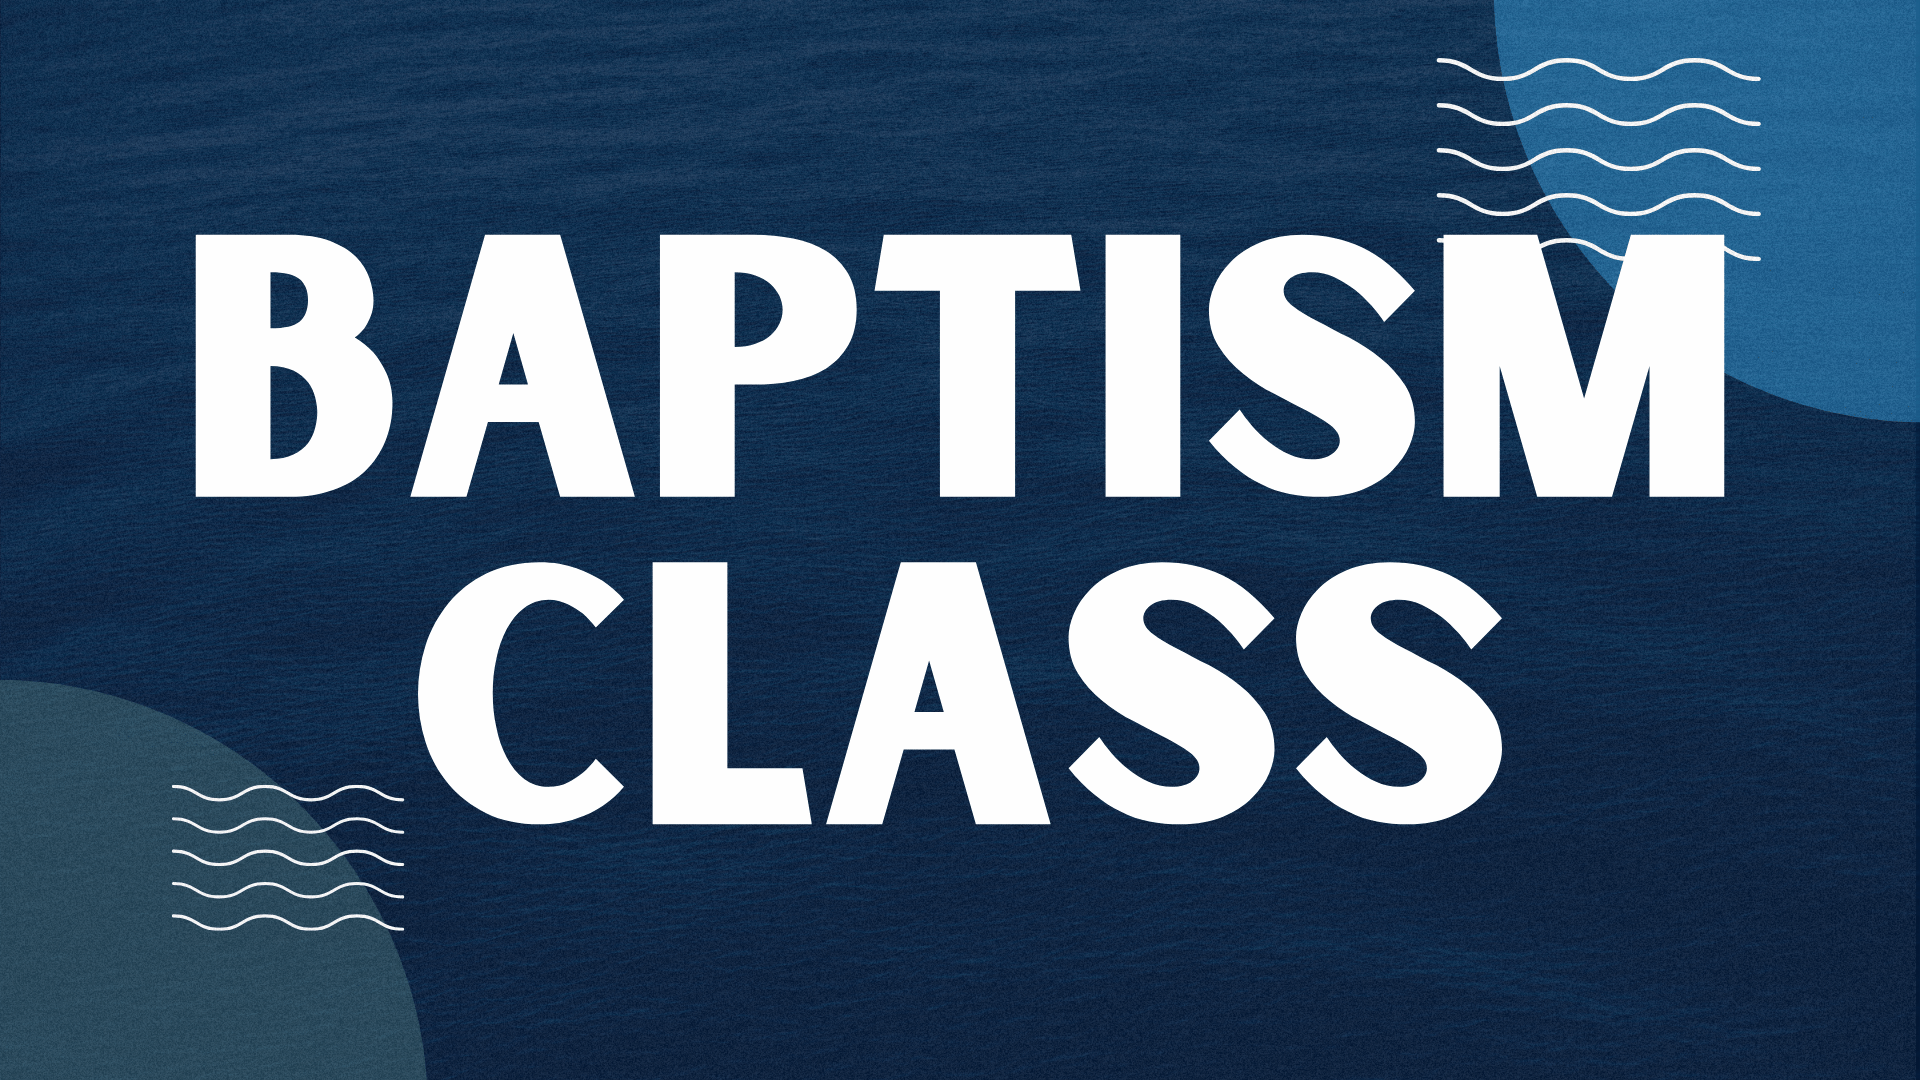 Baptism Class image